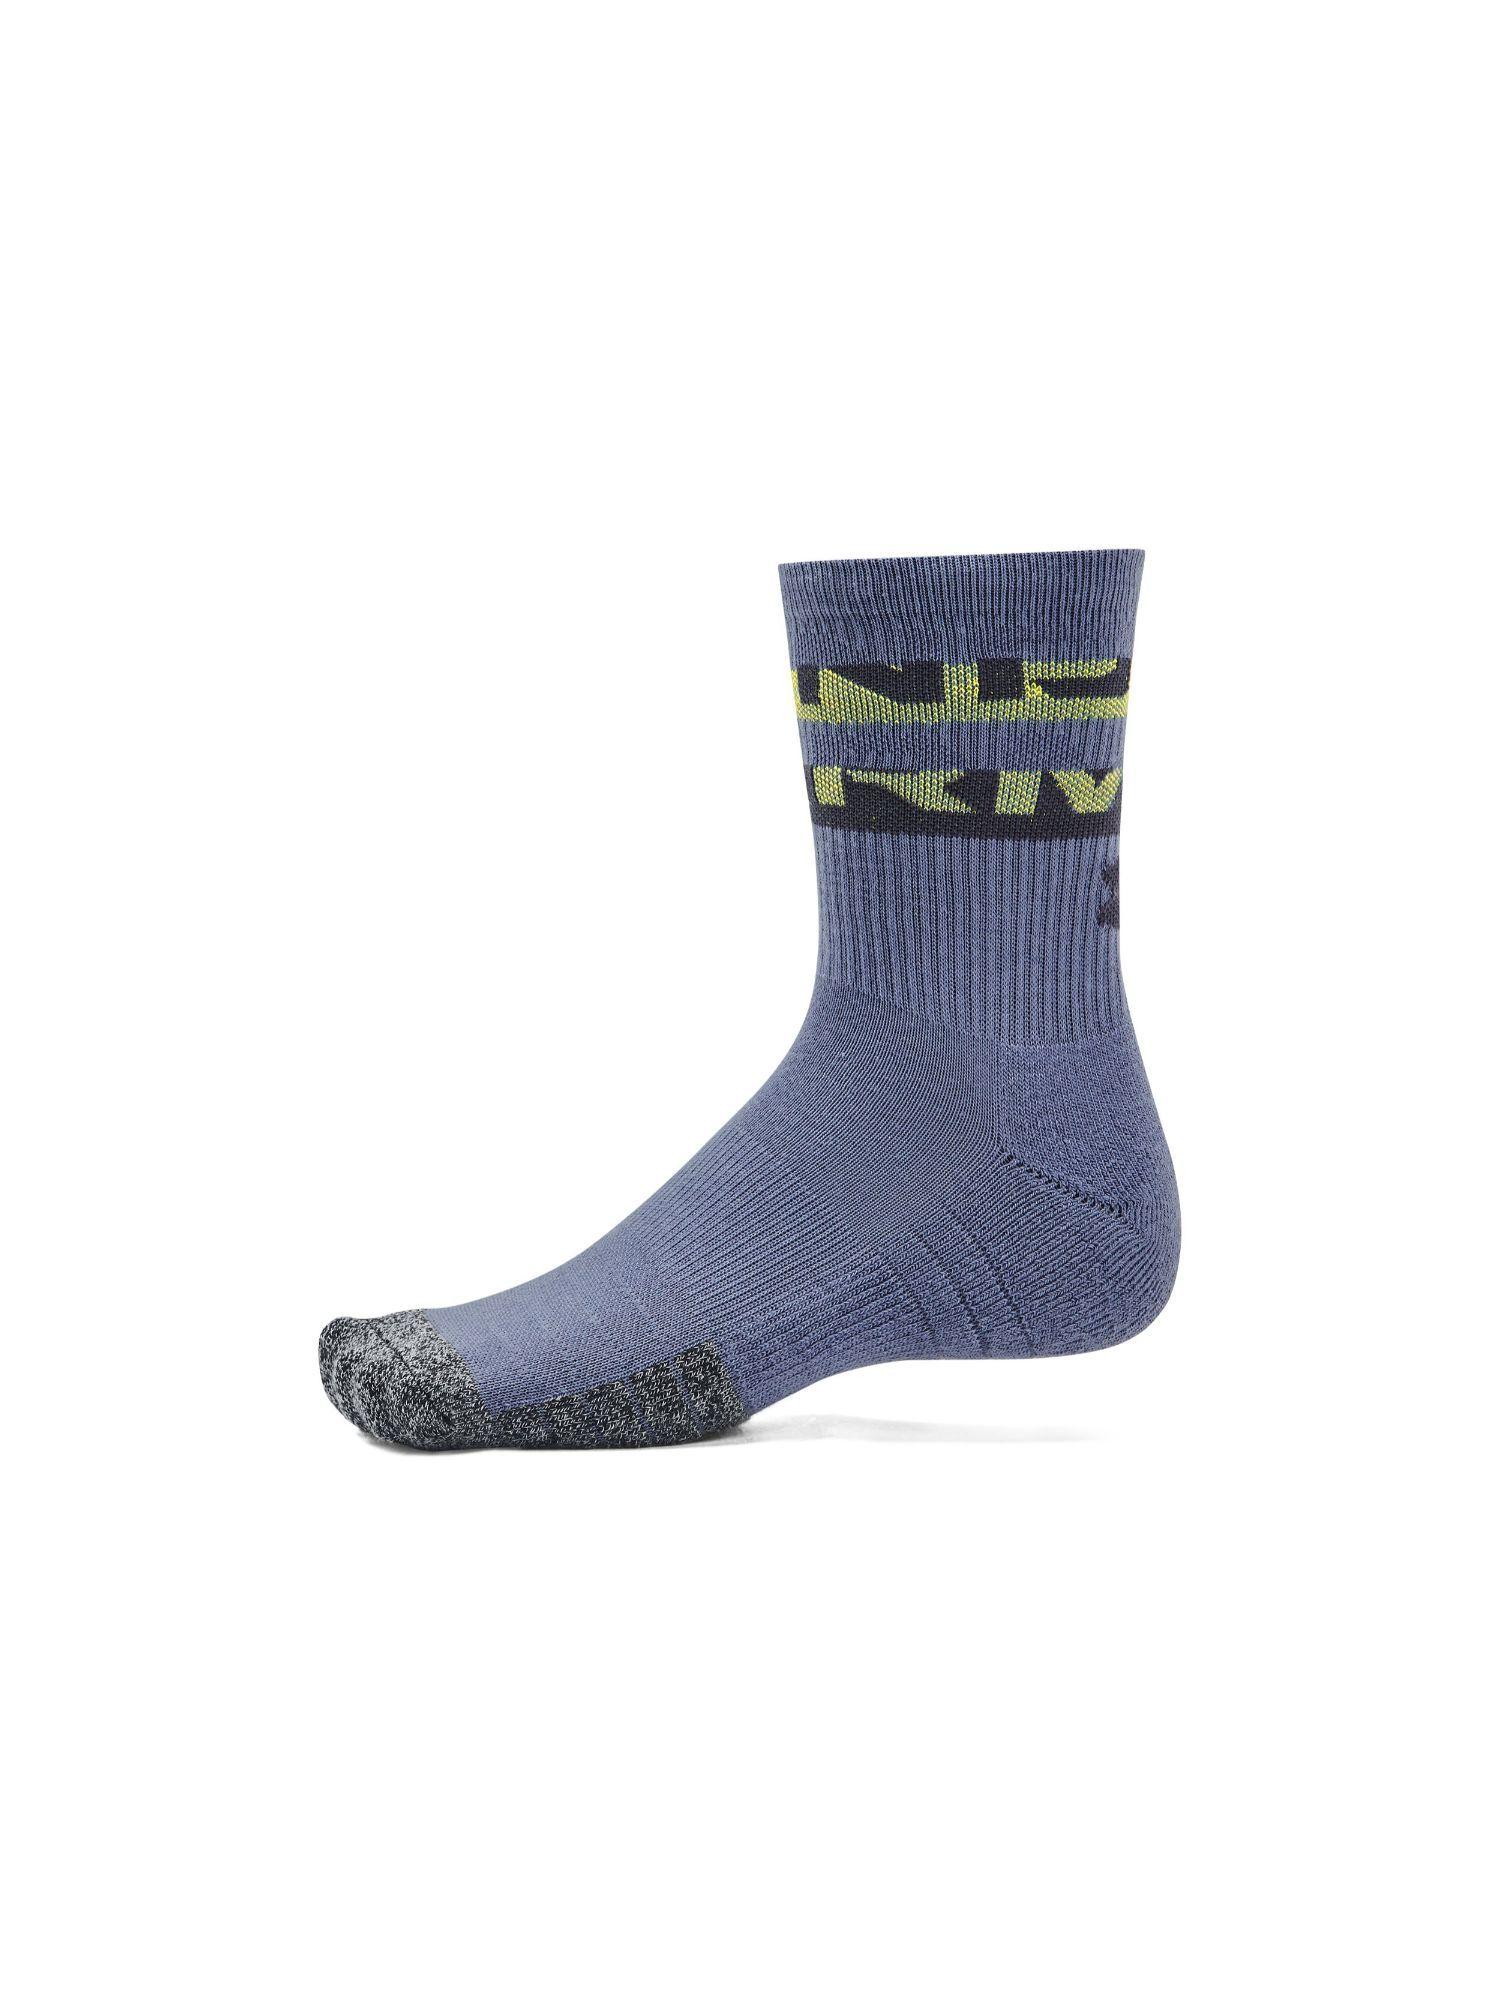 unisex heat gear novelty crew socks - purple